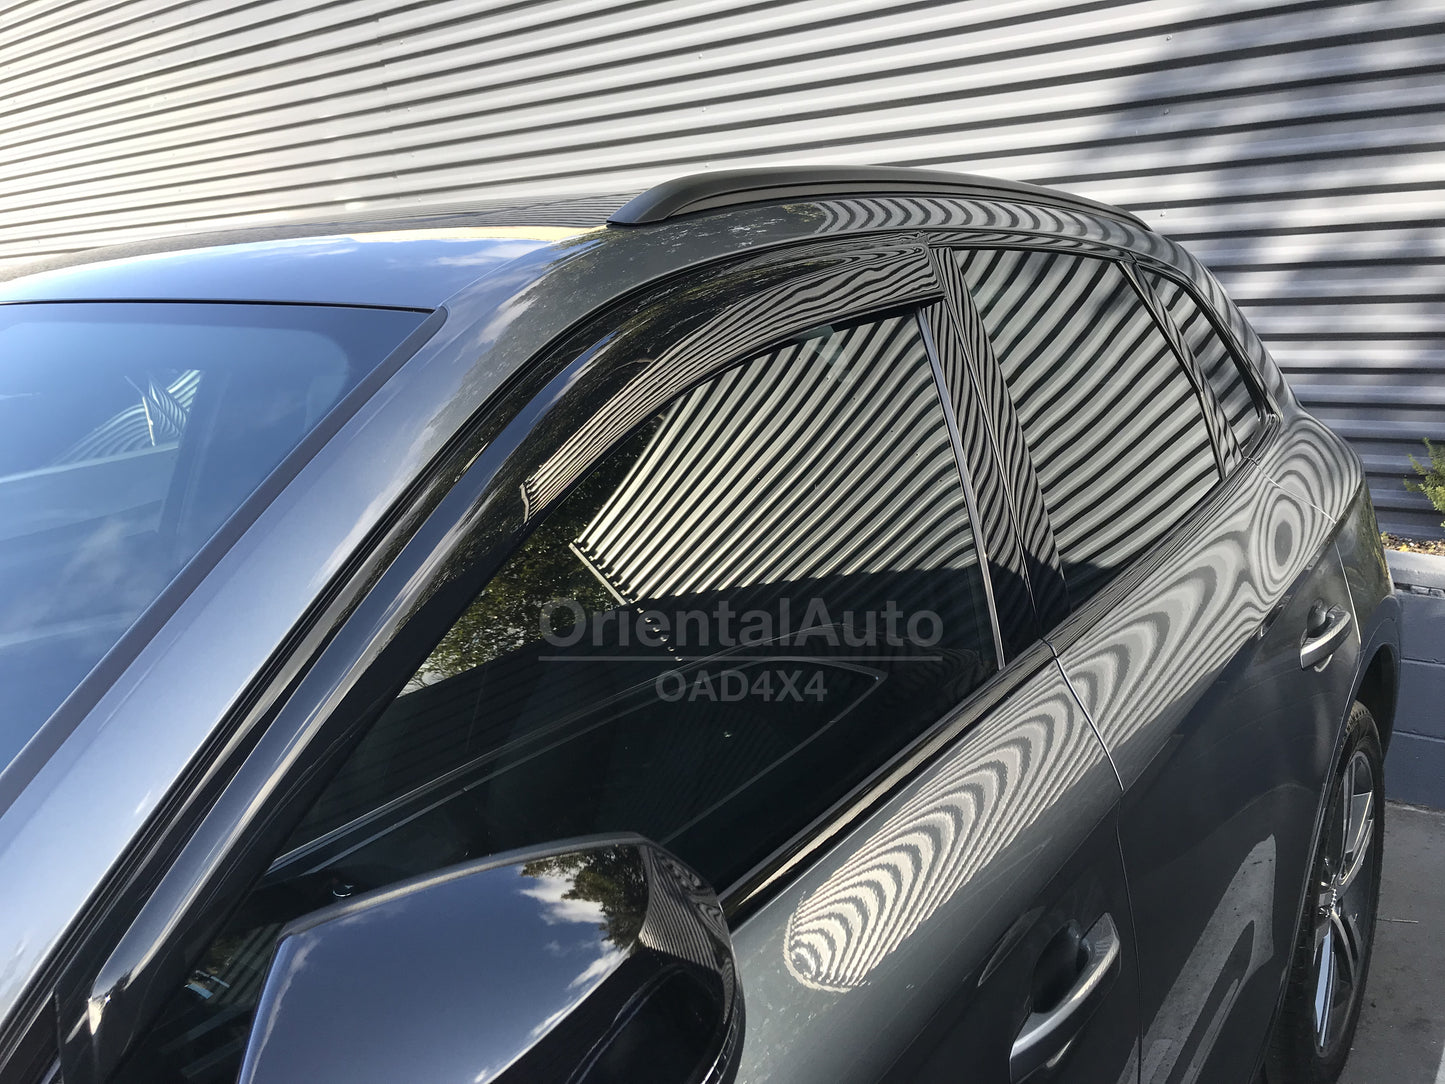 Luxury 2pcs Weathershields Weather Shields Window Visor For Audi Q5 2017-Onwards